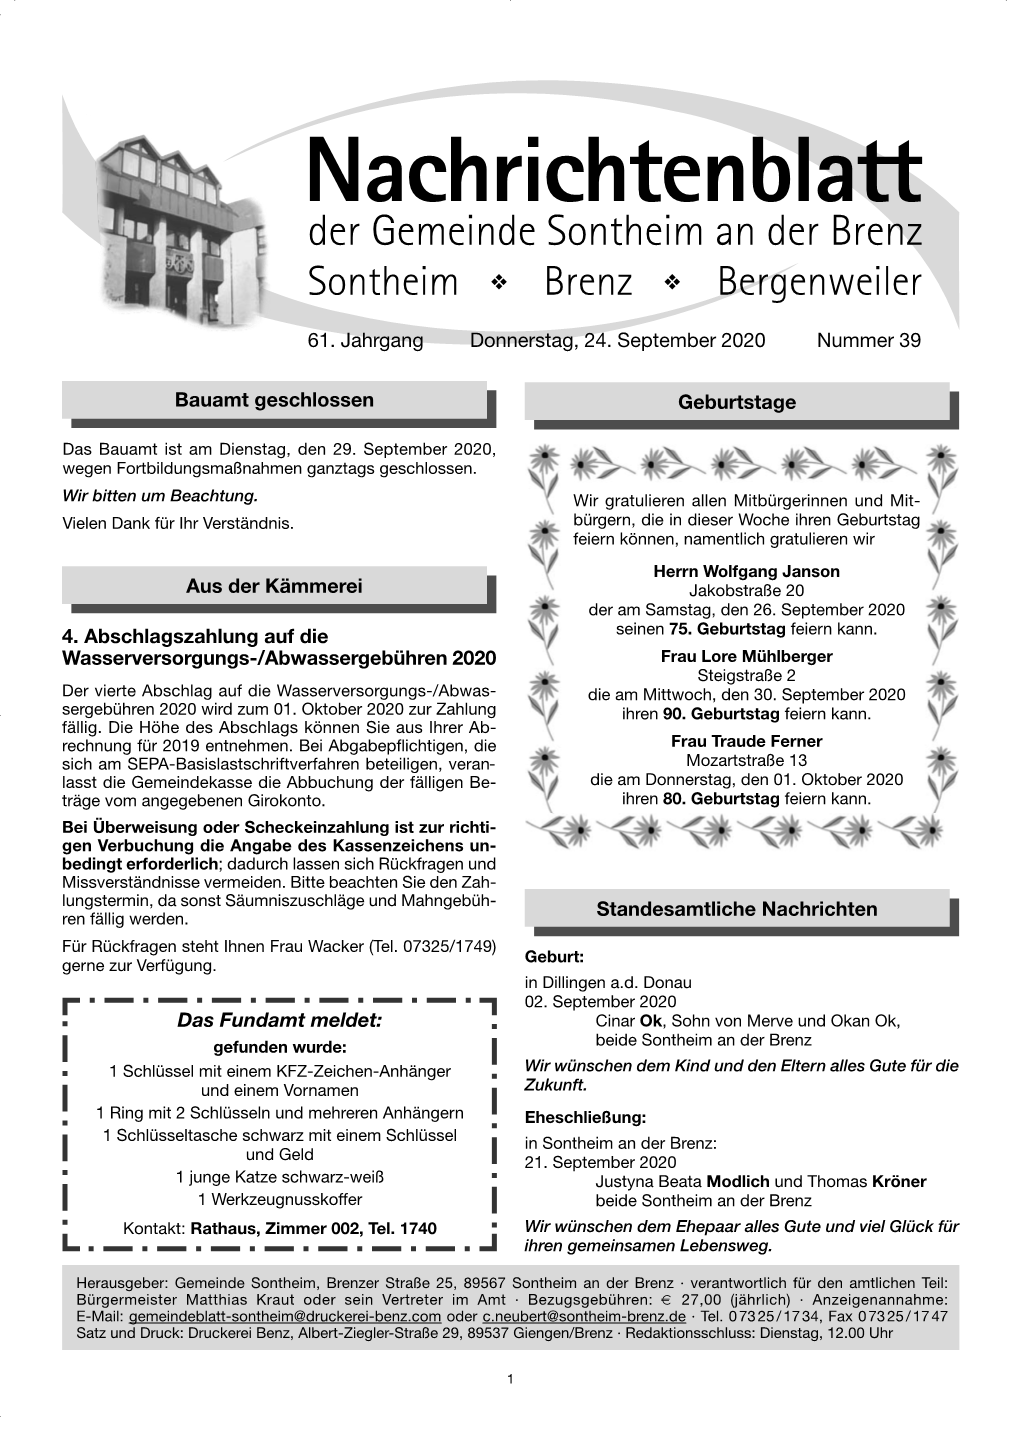 Nachrichtenblatt Sontheim - KW 39-2020 Umbruch.Qxp 23.09.20 11:43 Seite 1